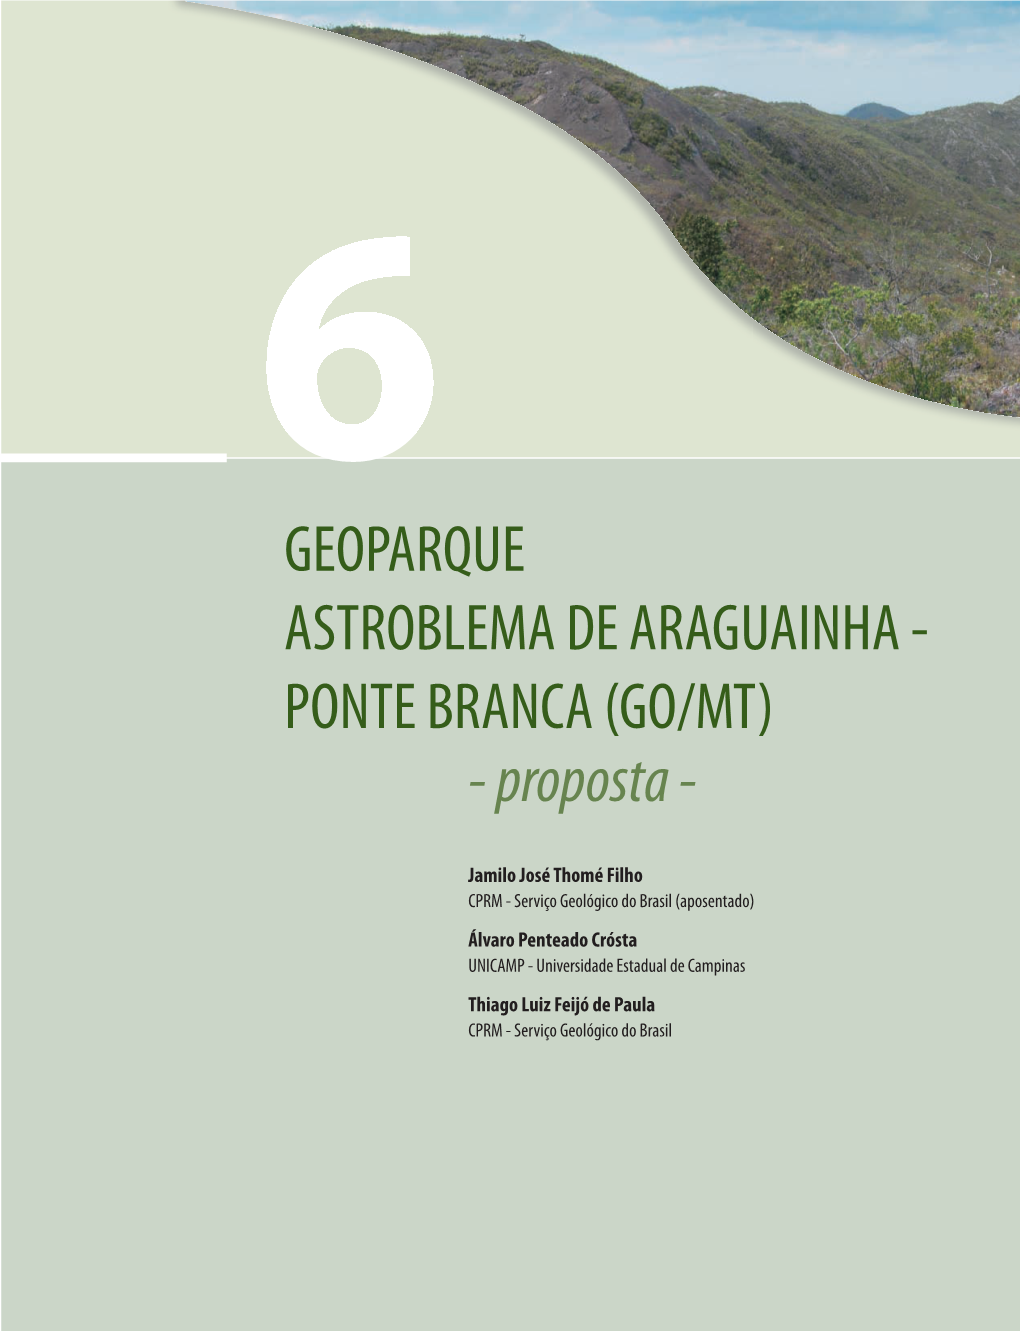 GEOPARQUE ASTROBLEMA DE ARAGUAINHA - PONTE BRANCA (GO/MT) - Proposta